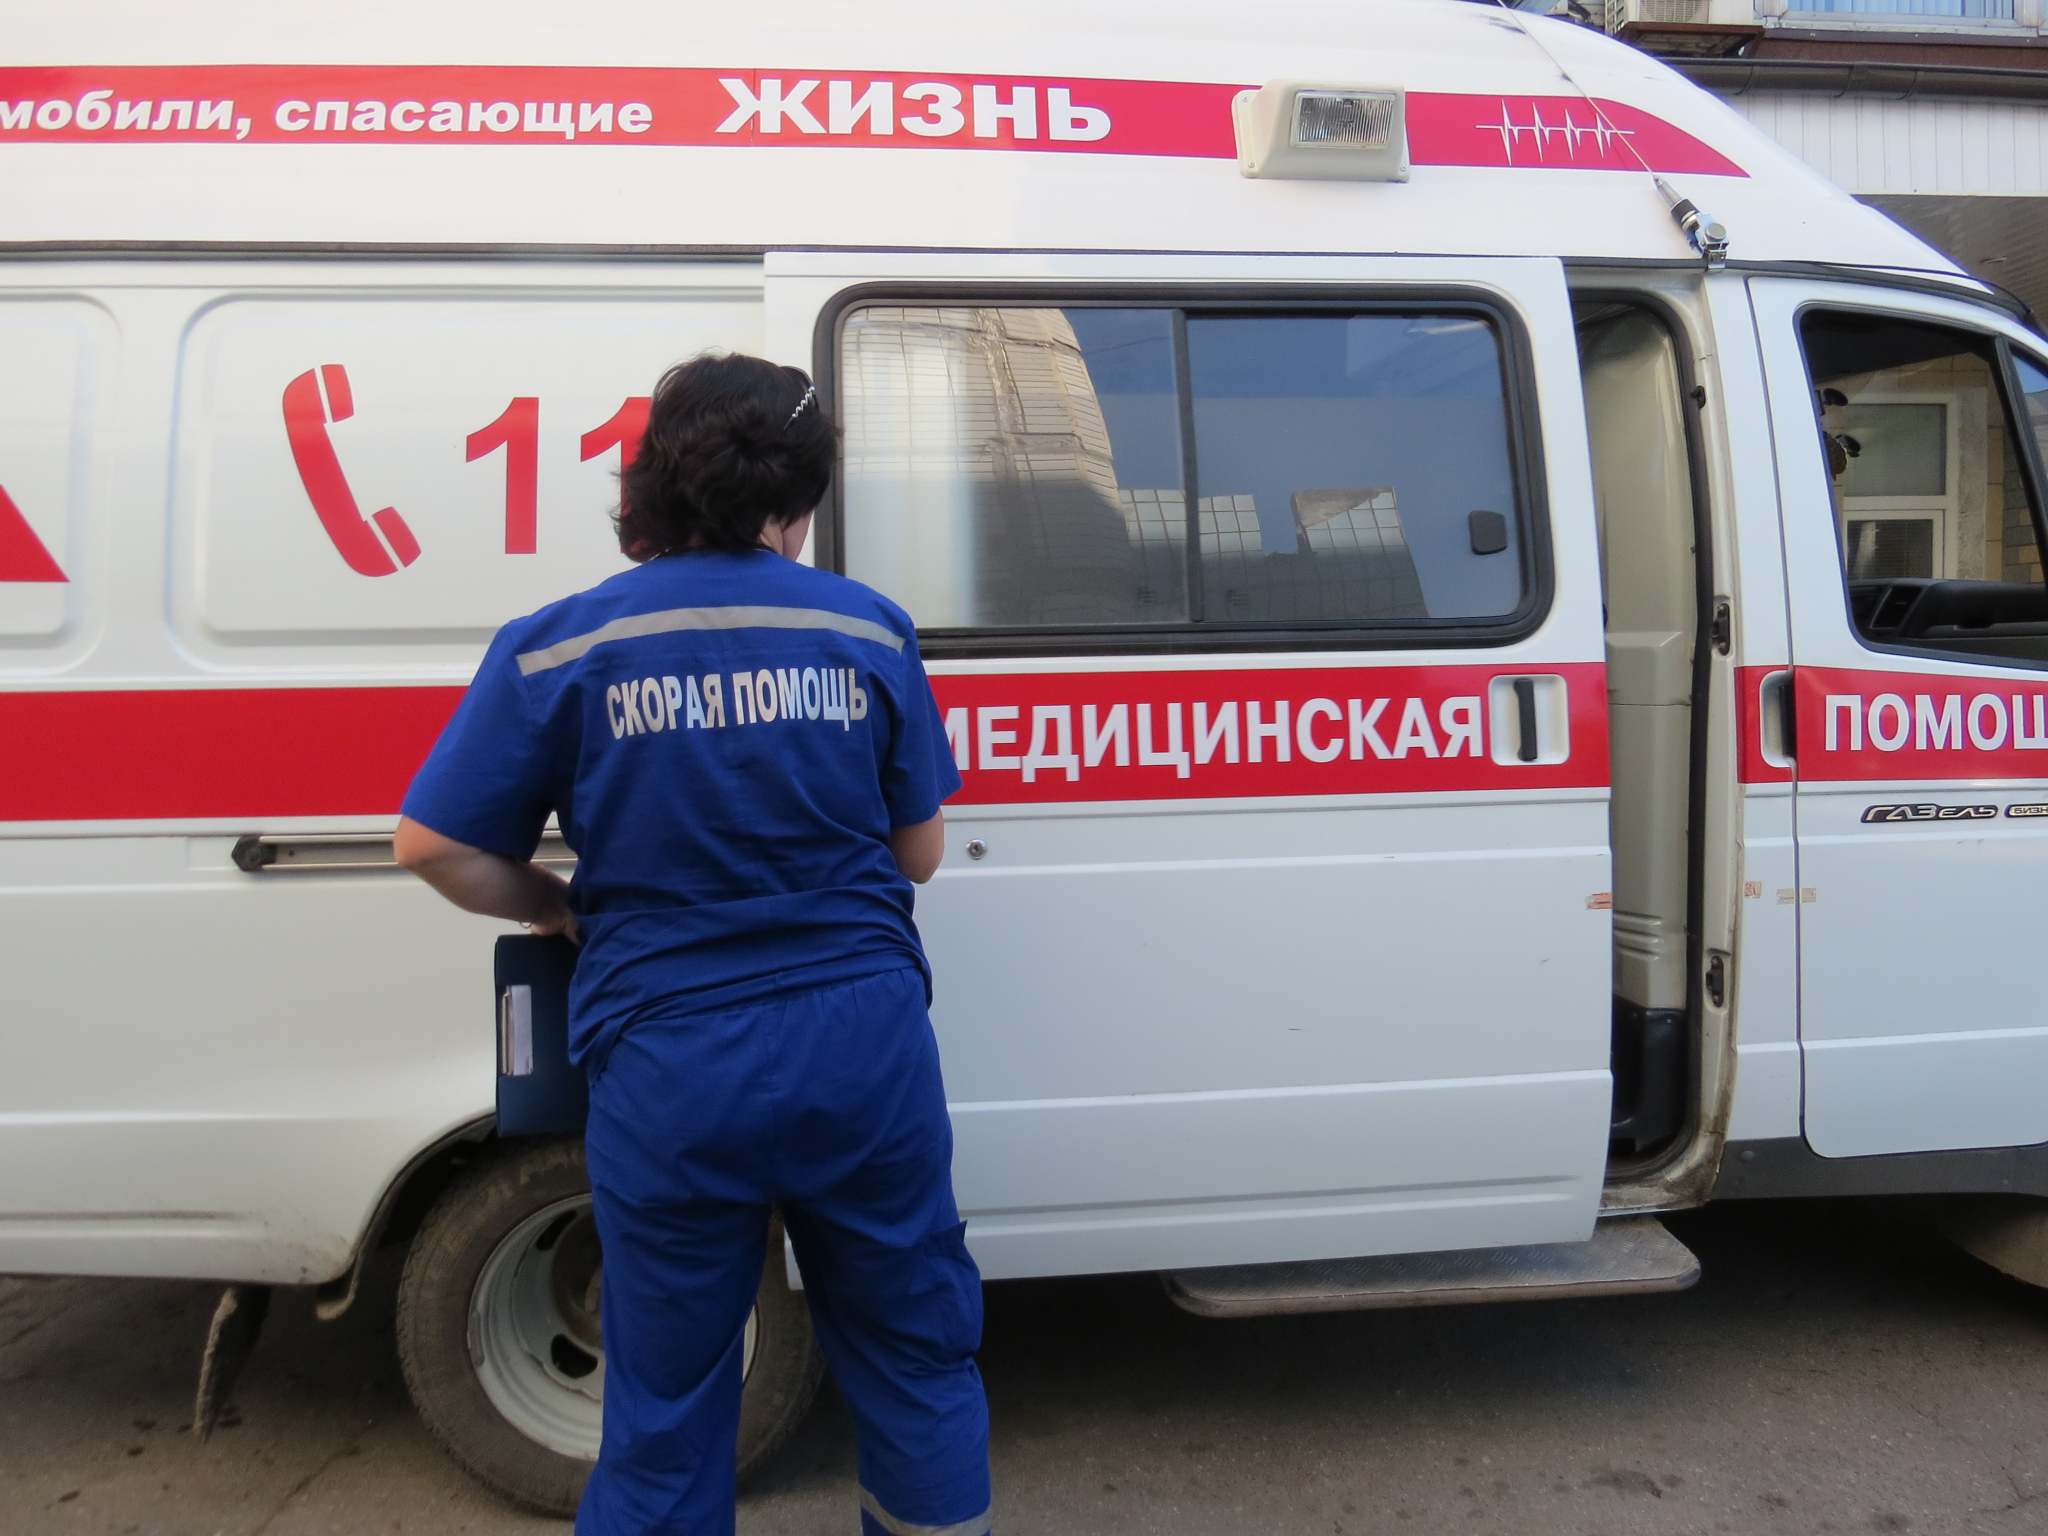 Пострадавший от удара током 10-летний мальчик умер в Нижнем Новгороде